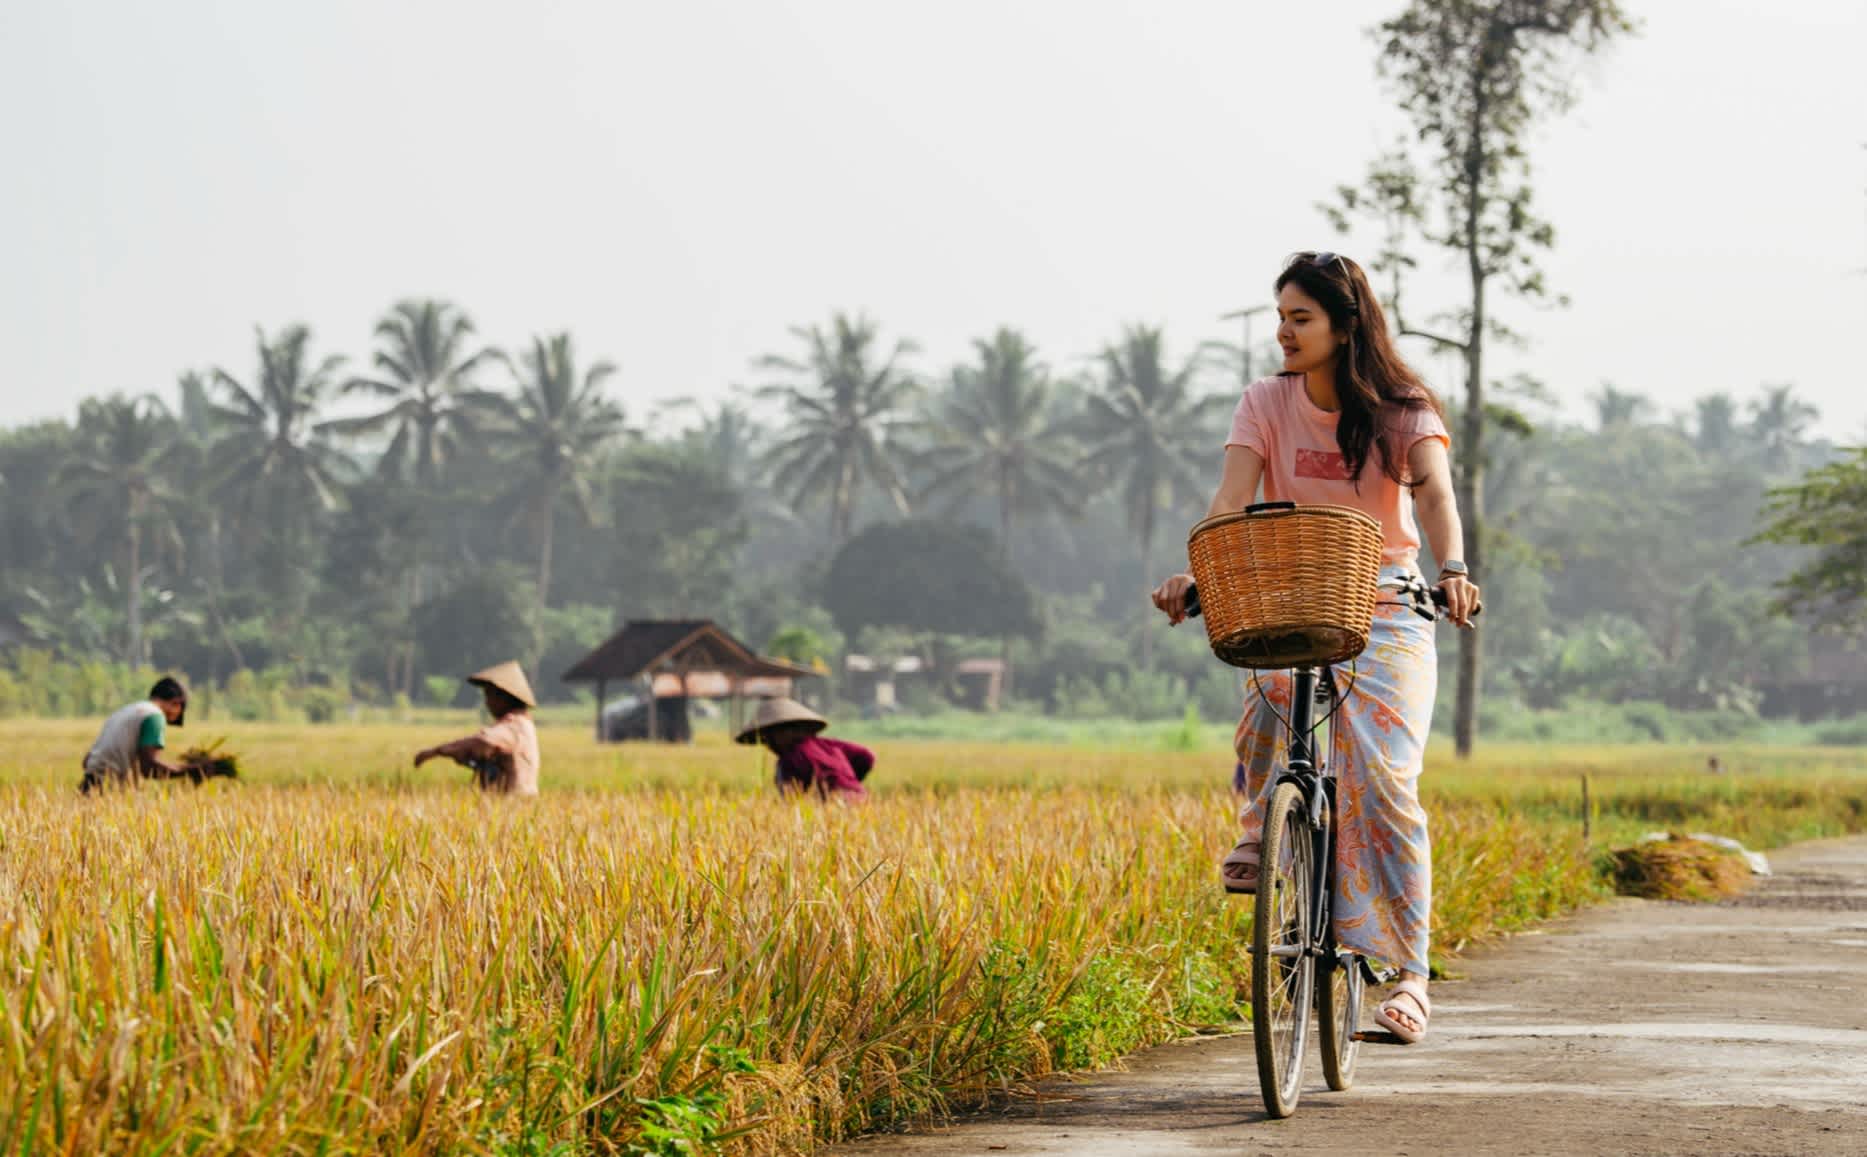 Junge Frau auf dem Fahrrad mit den Reisfeldern im Hintergrund, Bali, Indonesien. 

